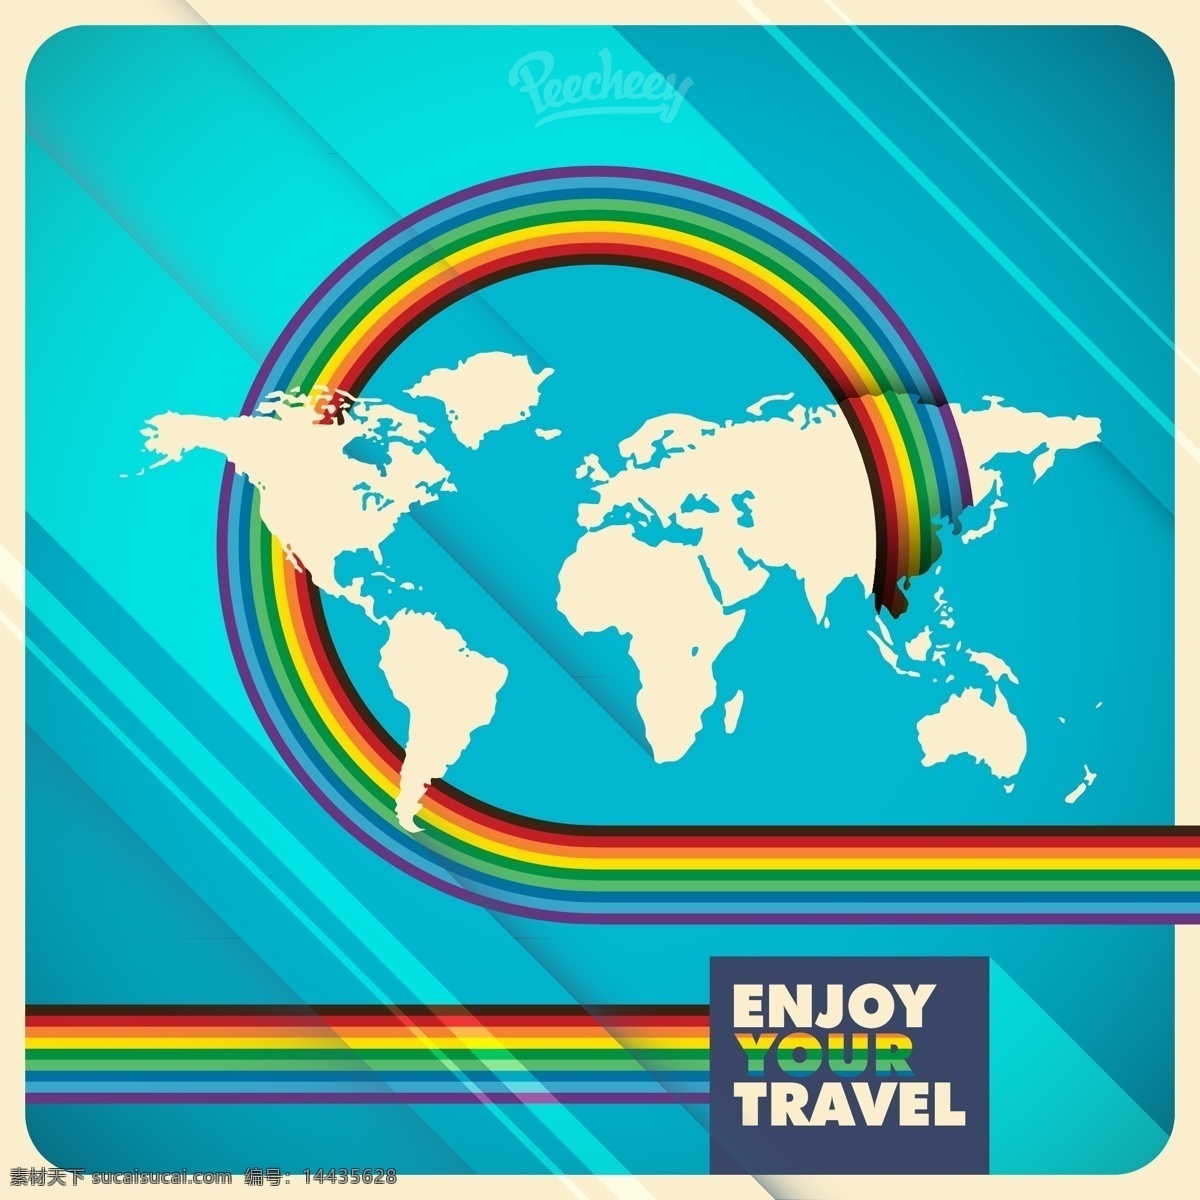 彩虹 条纹 世界地图 旅行 背景 摘要背景壁纸 地图 旅游 模板和模型